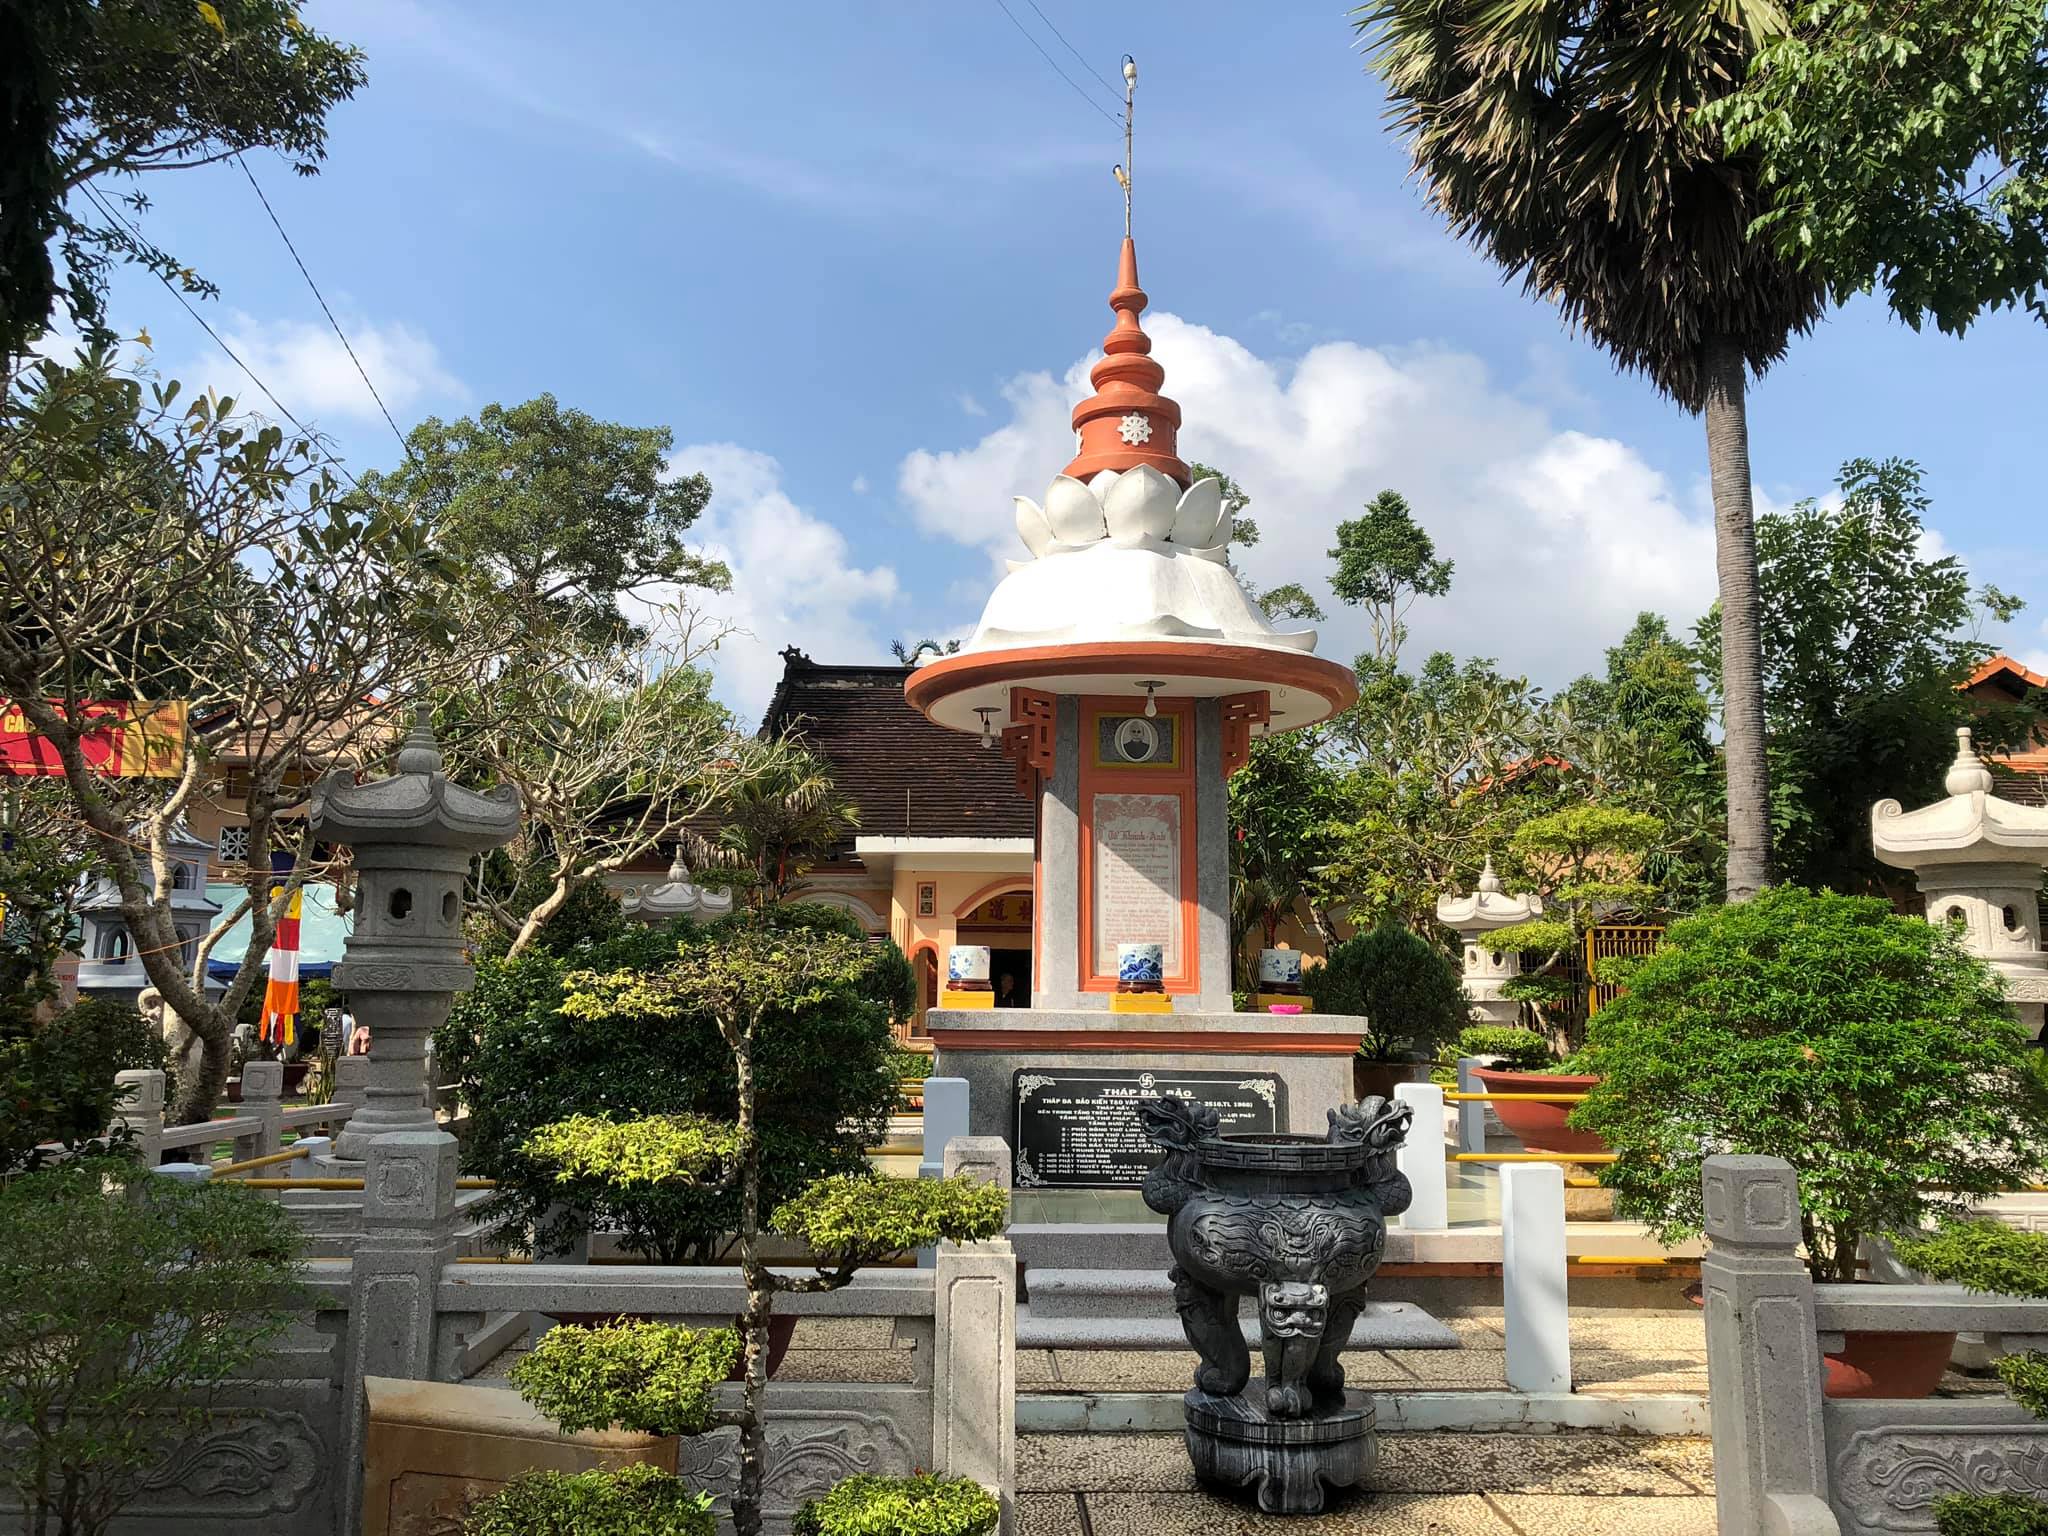 Chùa Phước Hậu - Ngôi chùa có vườn kinh bằng đá độc đáo ở Vĩnh Long